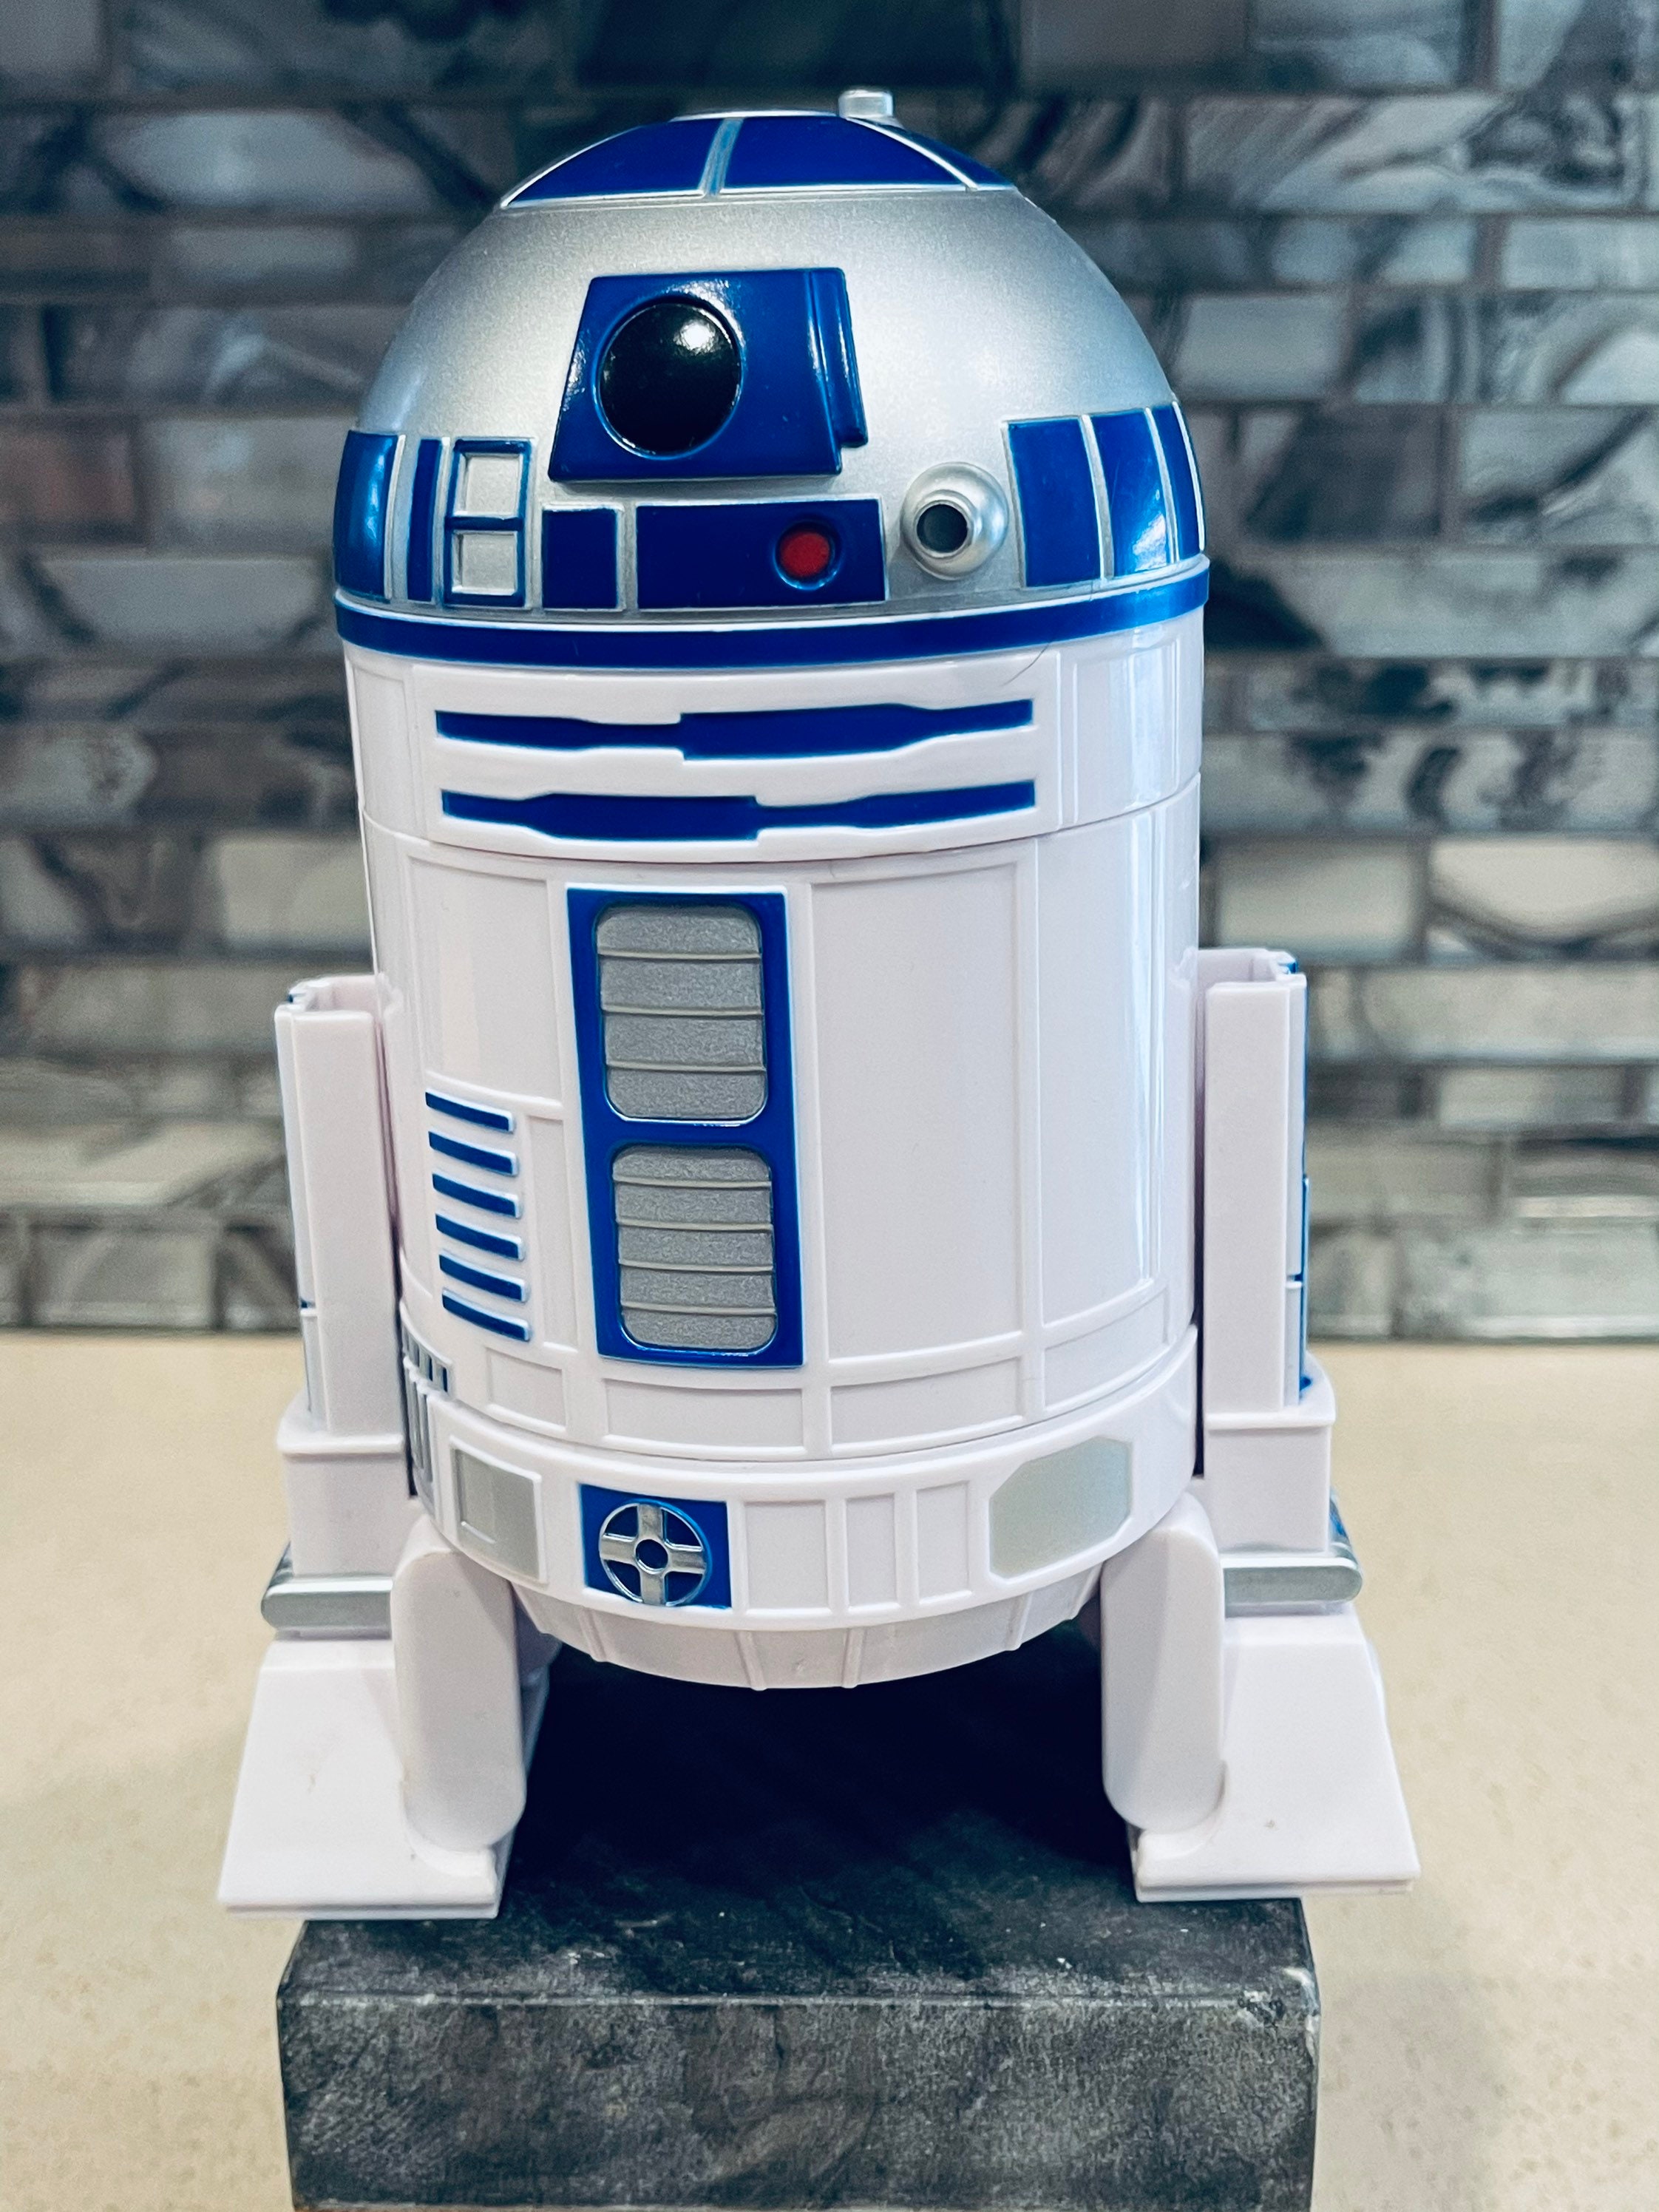 R2-D2 Measuring Cup Set 